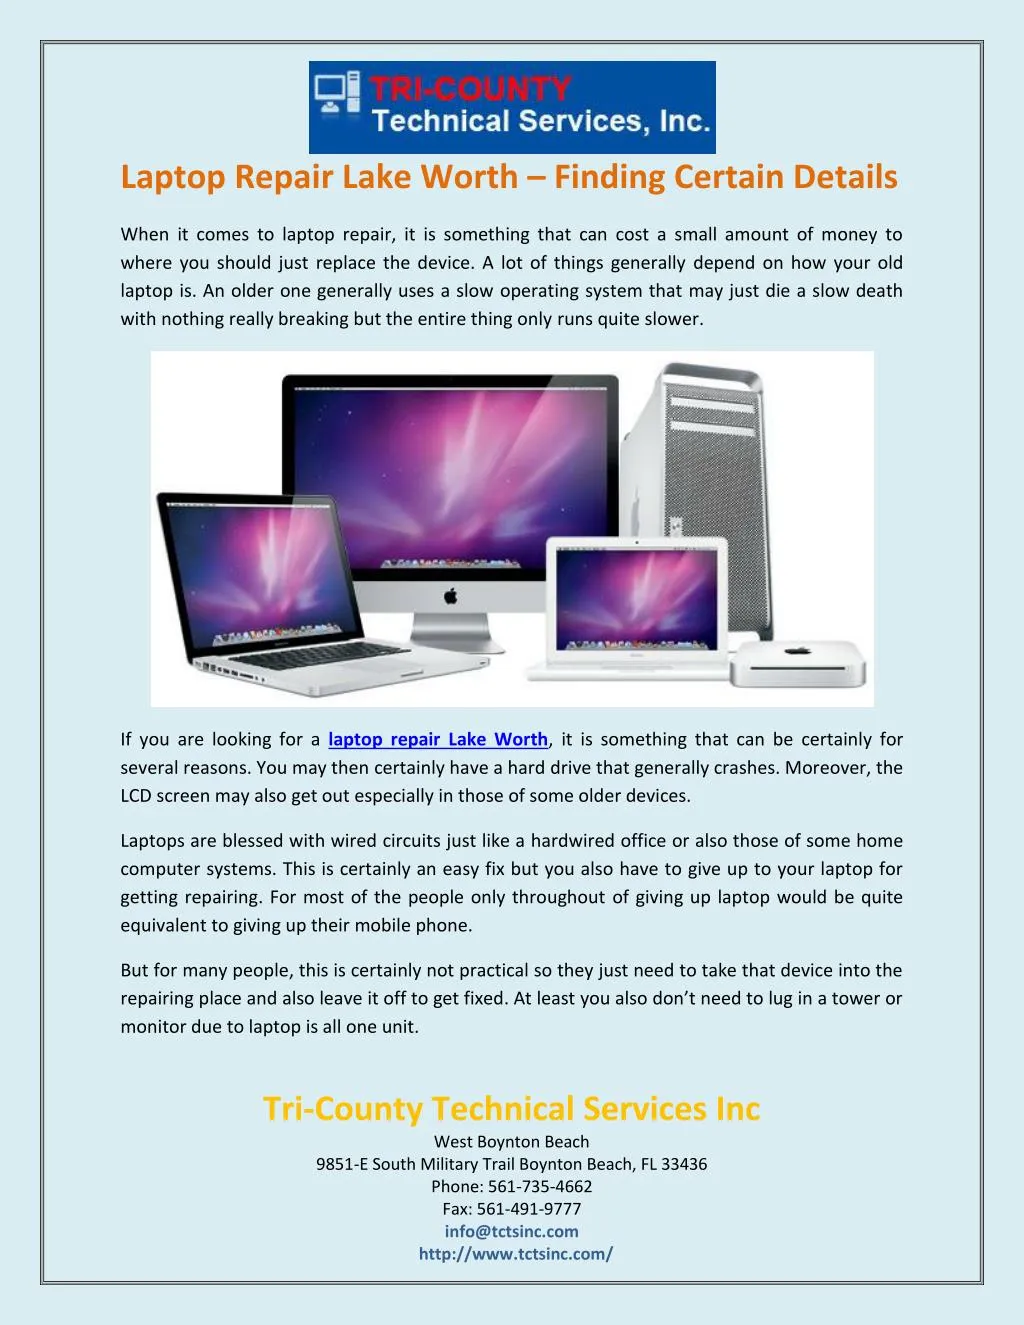 laptop repair lake worth finding certain details